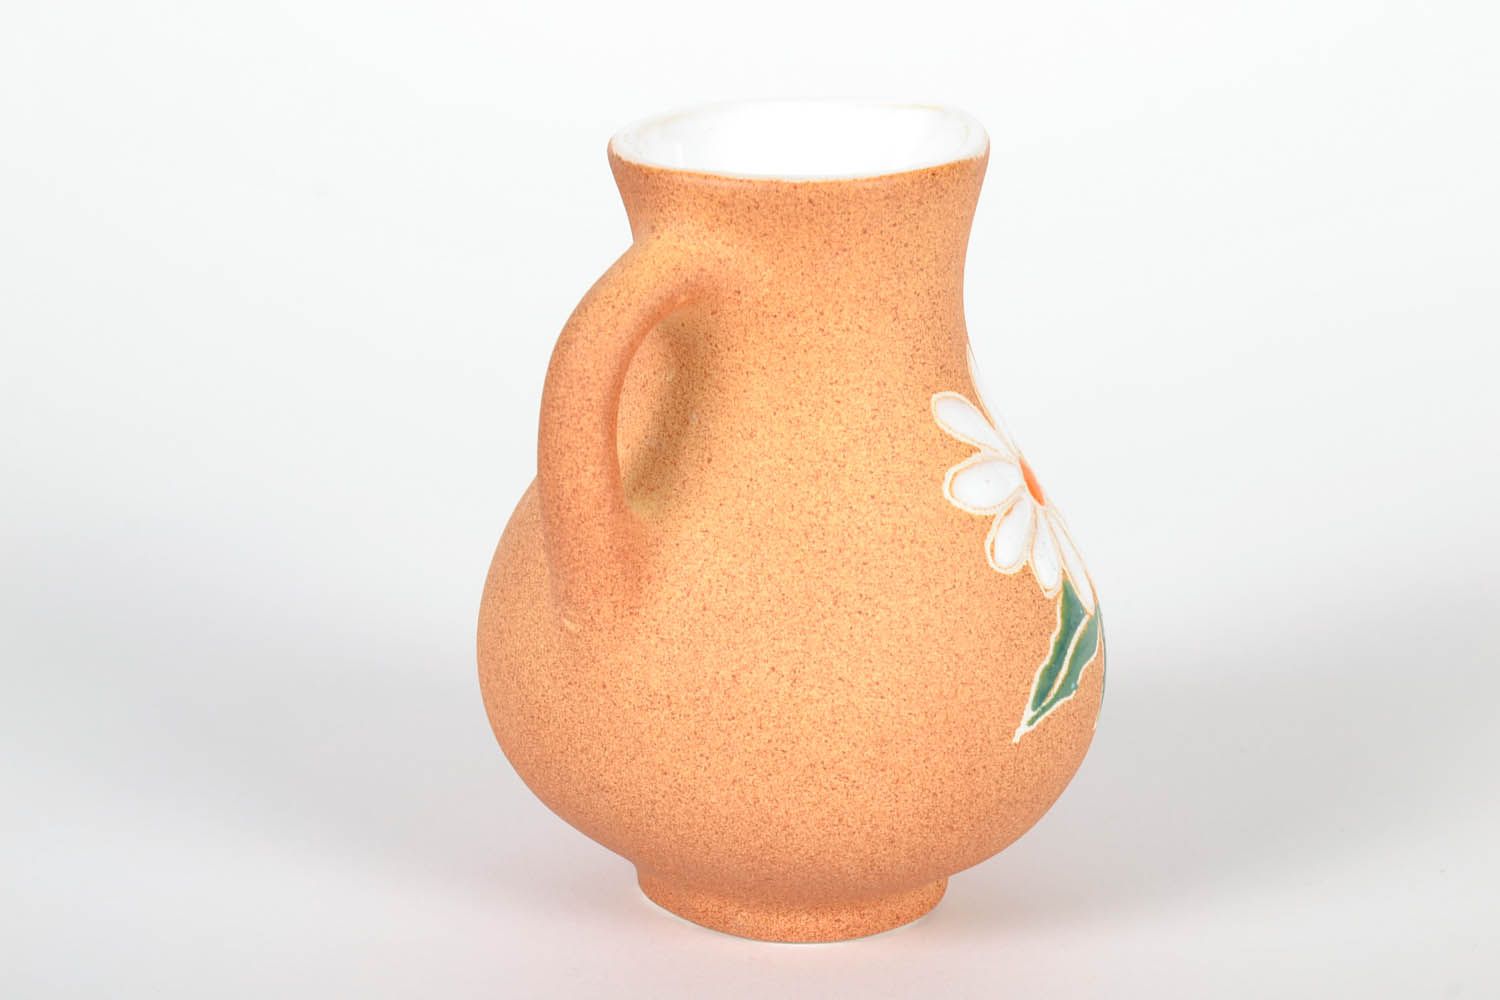 Porcelain 25 oz floral décor Sangria pitcher 5 inch 0,56 lb photo 3